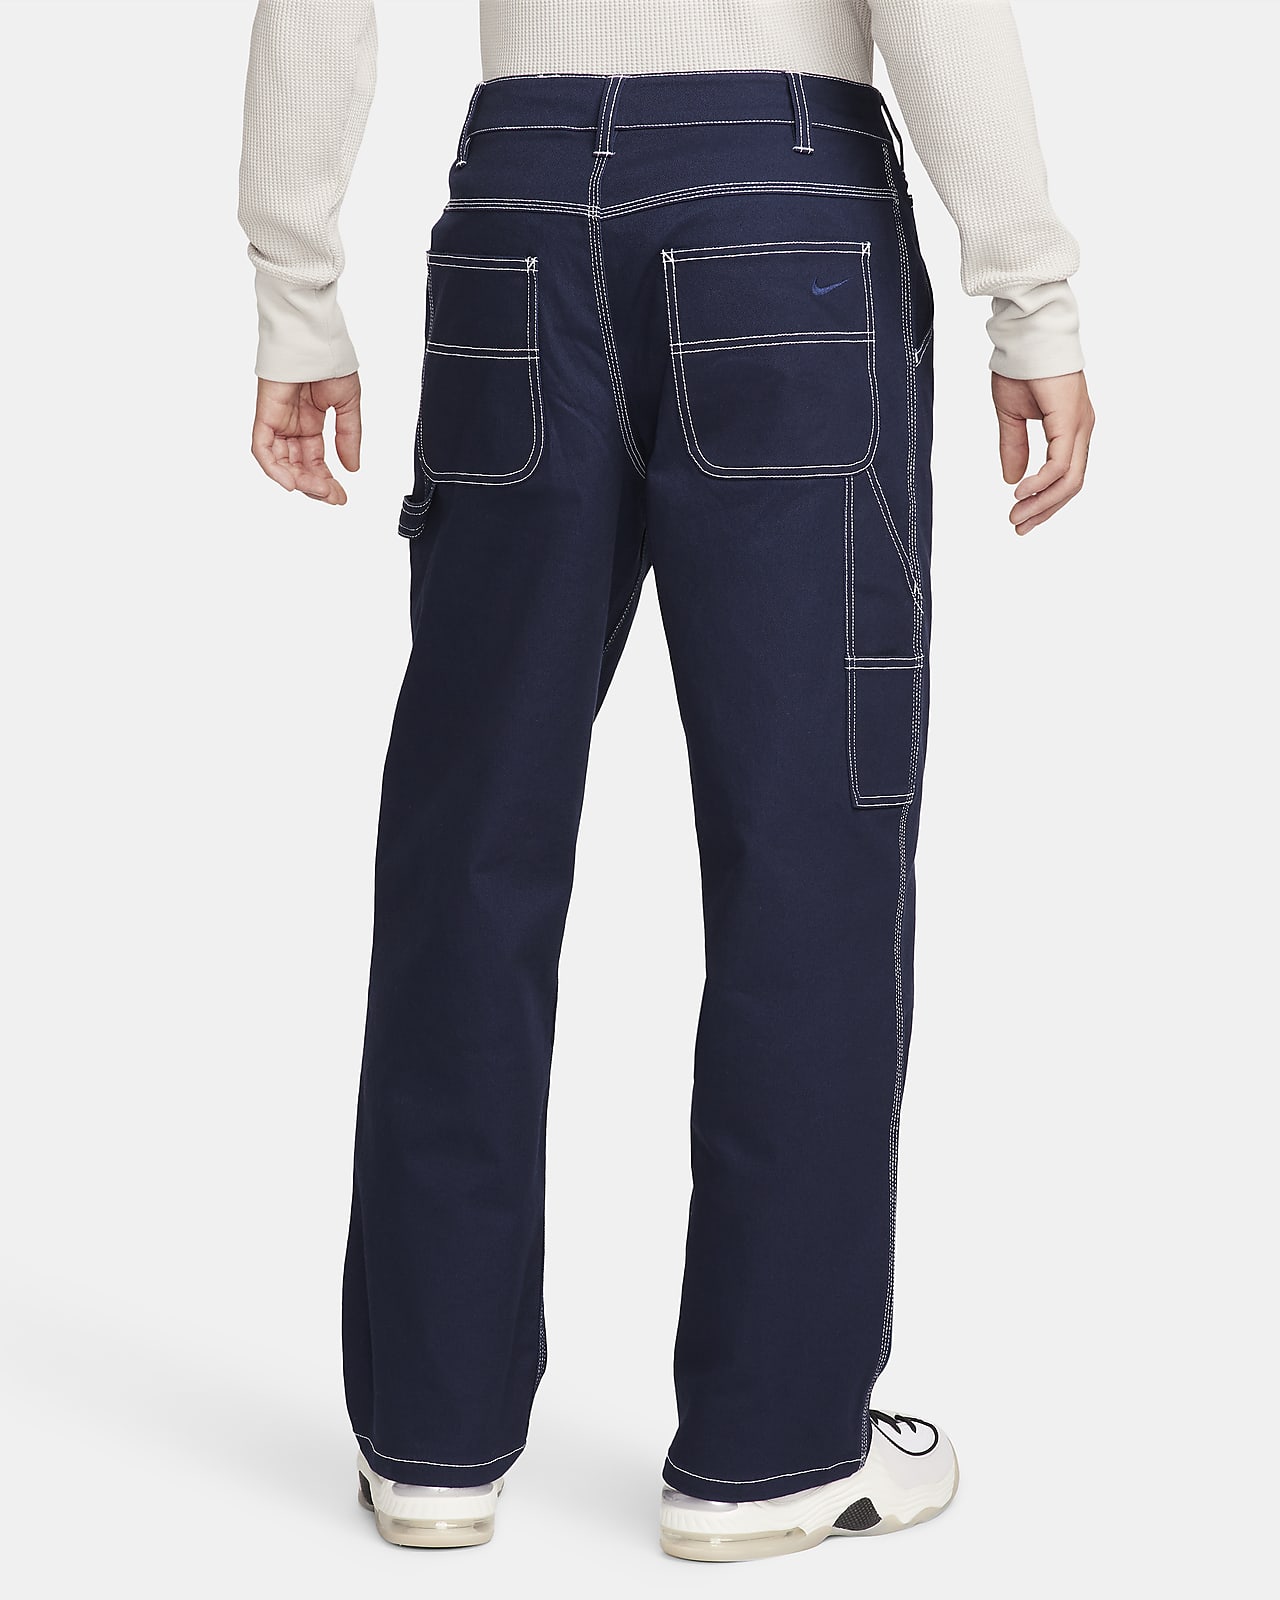 Black Side Chain Zipper Carpenter Pants Plus Size